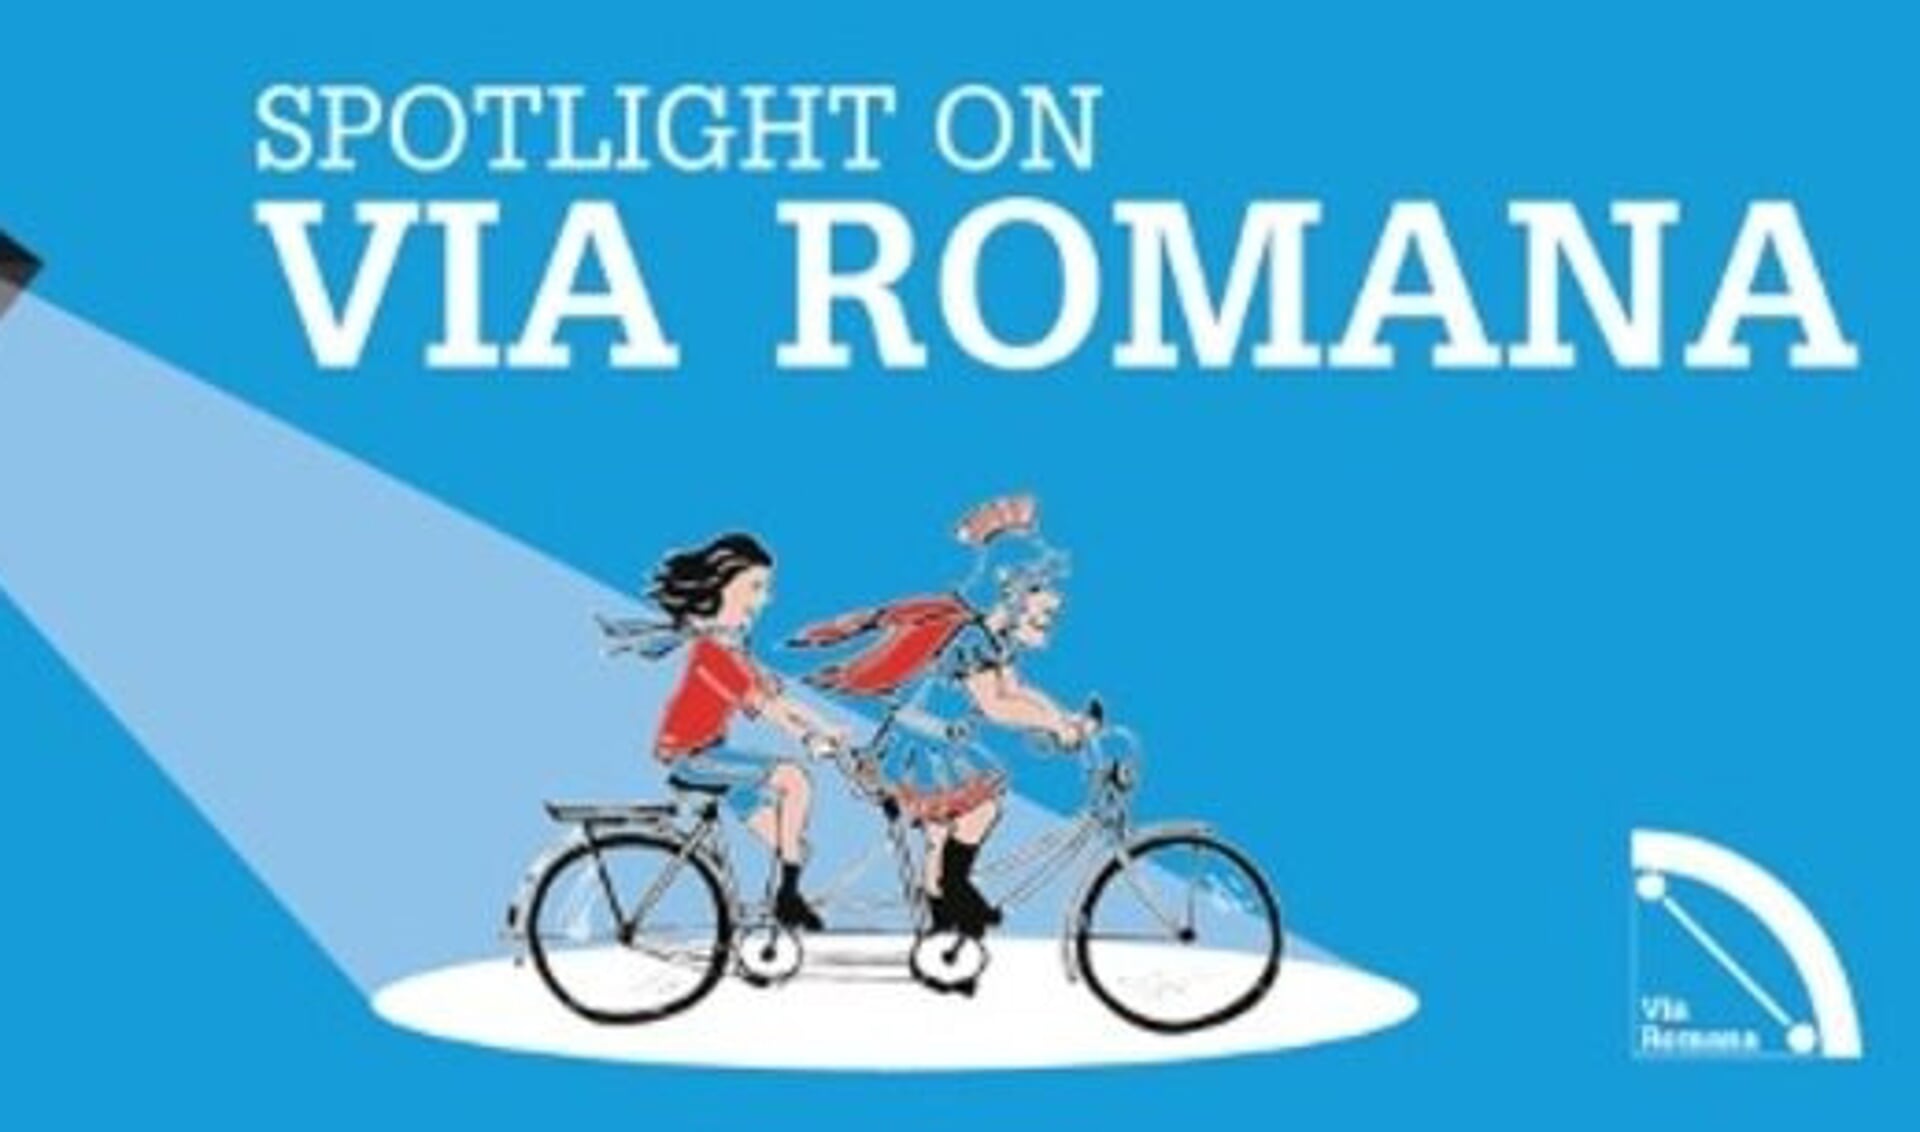 Via Romana, een fietsroute van bijna 250 kilometer langs restanten van de Romeinse geschiedenis, bestaat dertig jaar. 